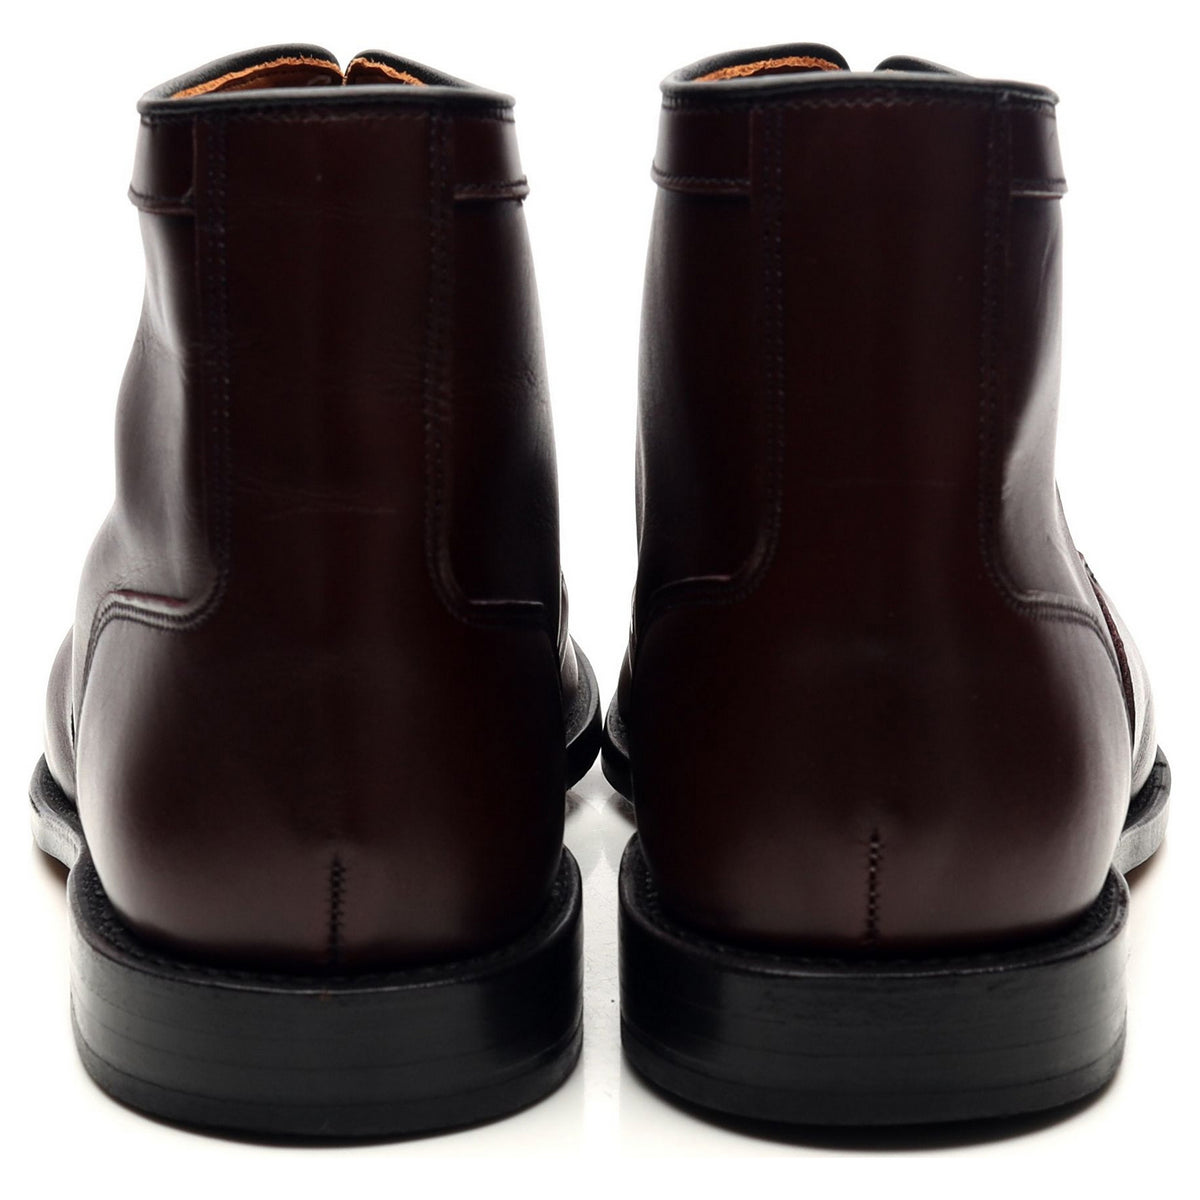 &#39;Park Avenue&#39; Burgundy Leather Boots UK 9 US 10 D